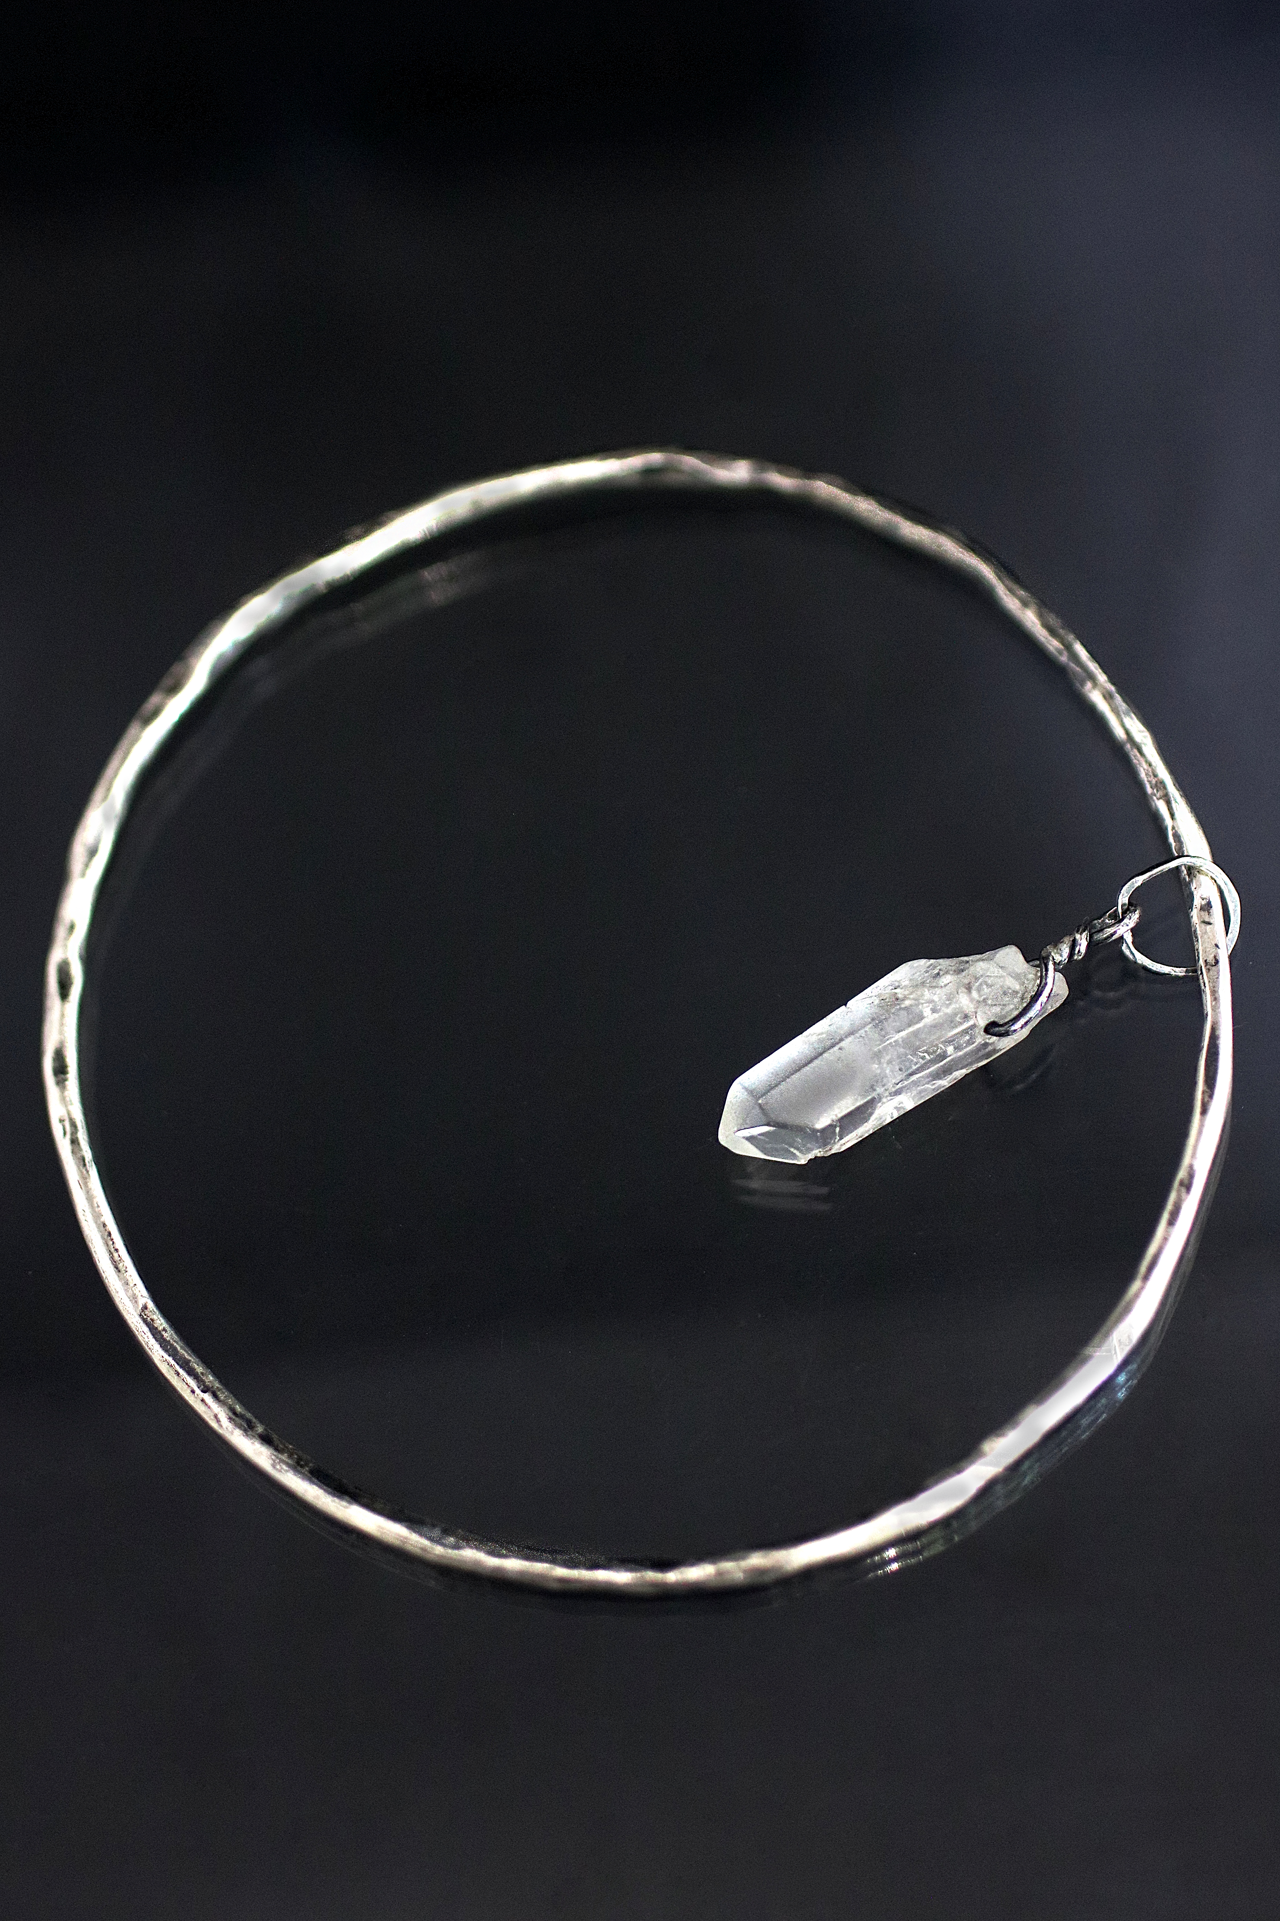 Buy SWAROVSKI Ethic Crystal Bangle Bracelet at Ubuy India